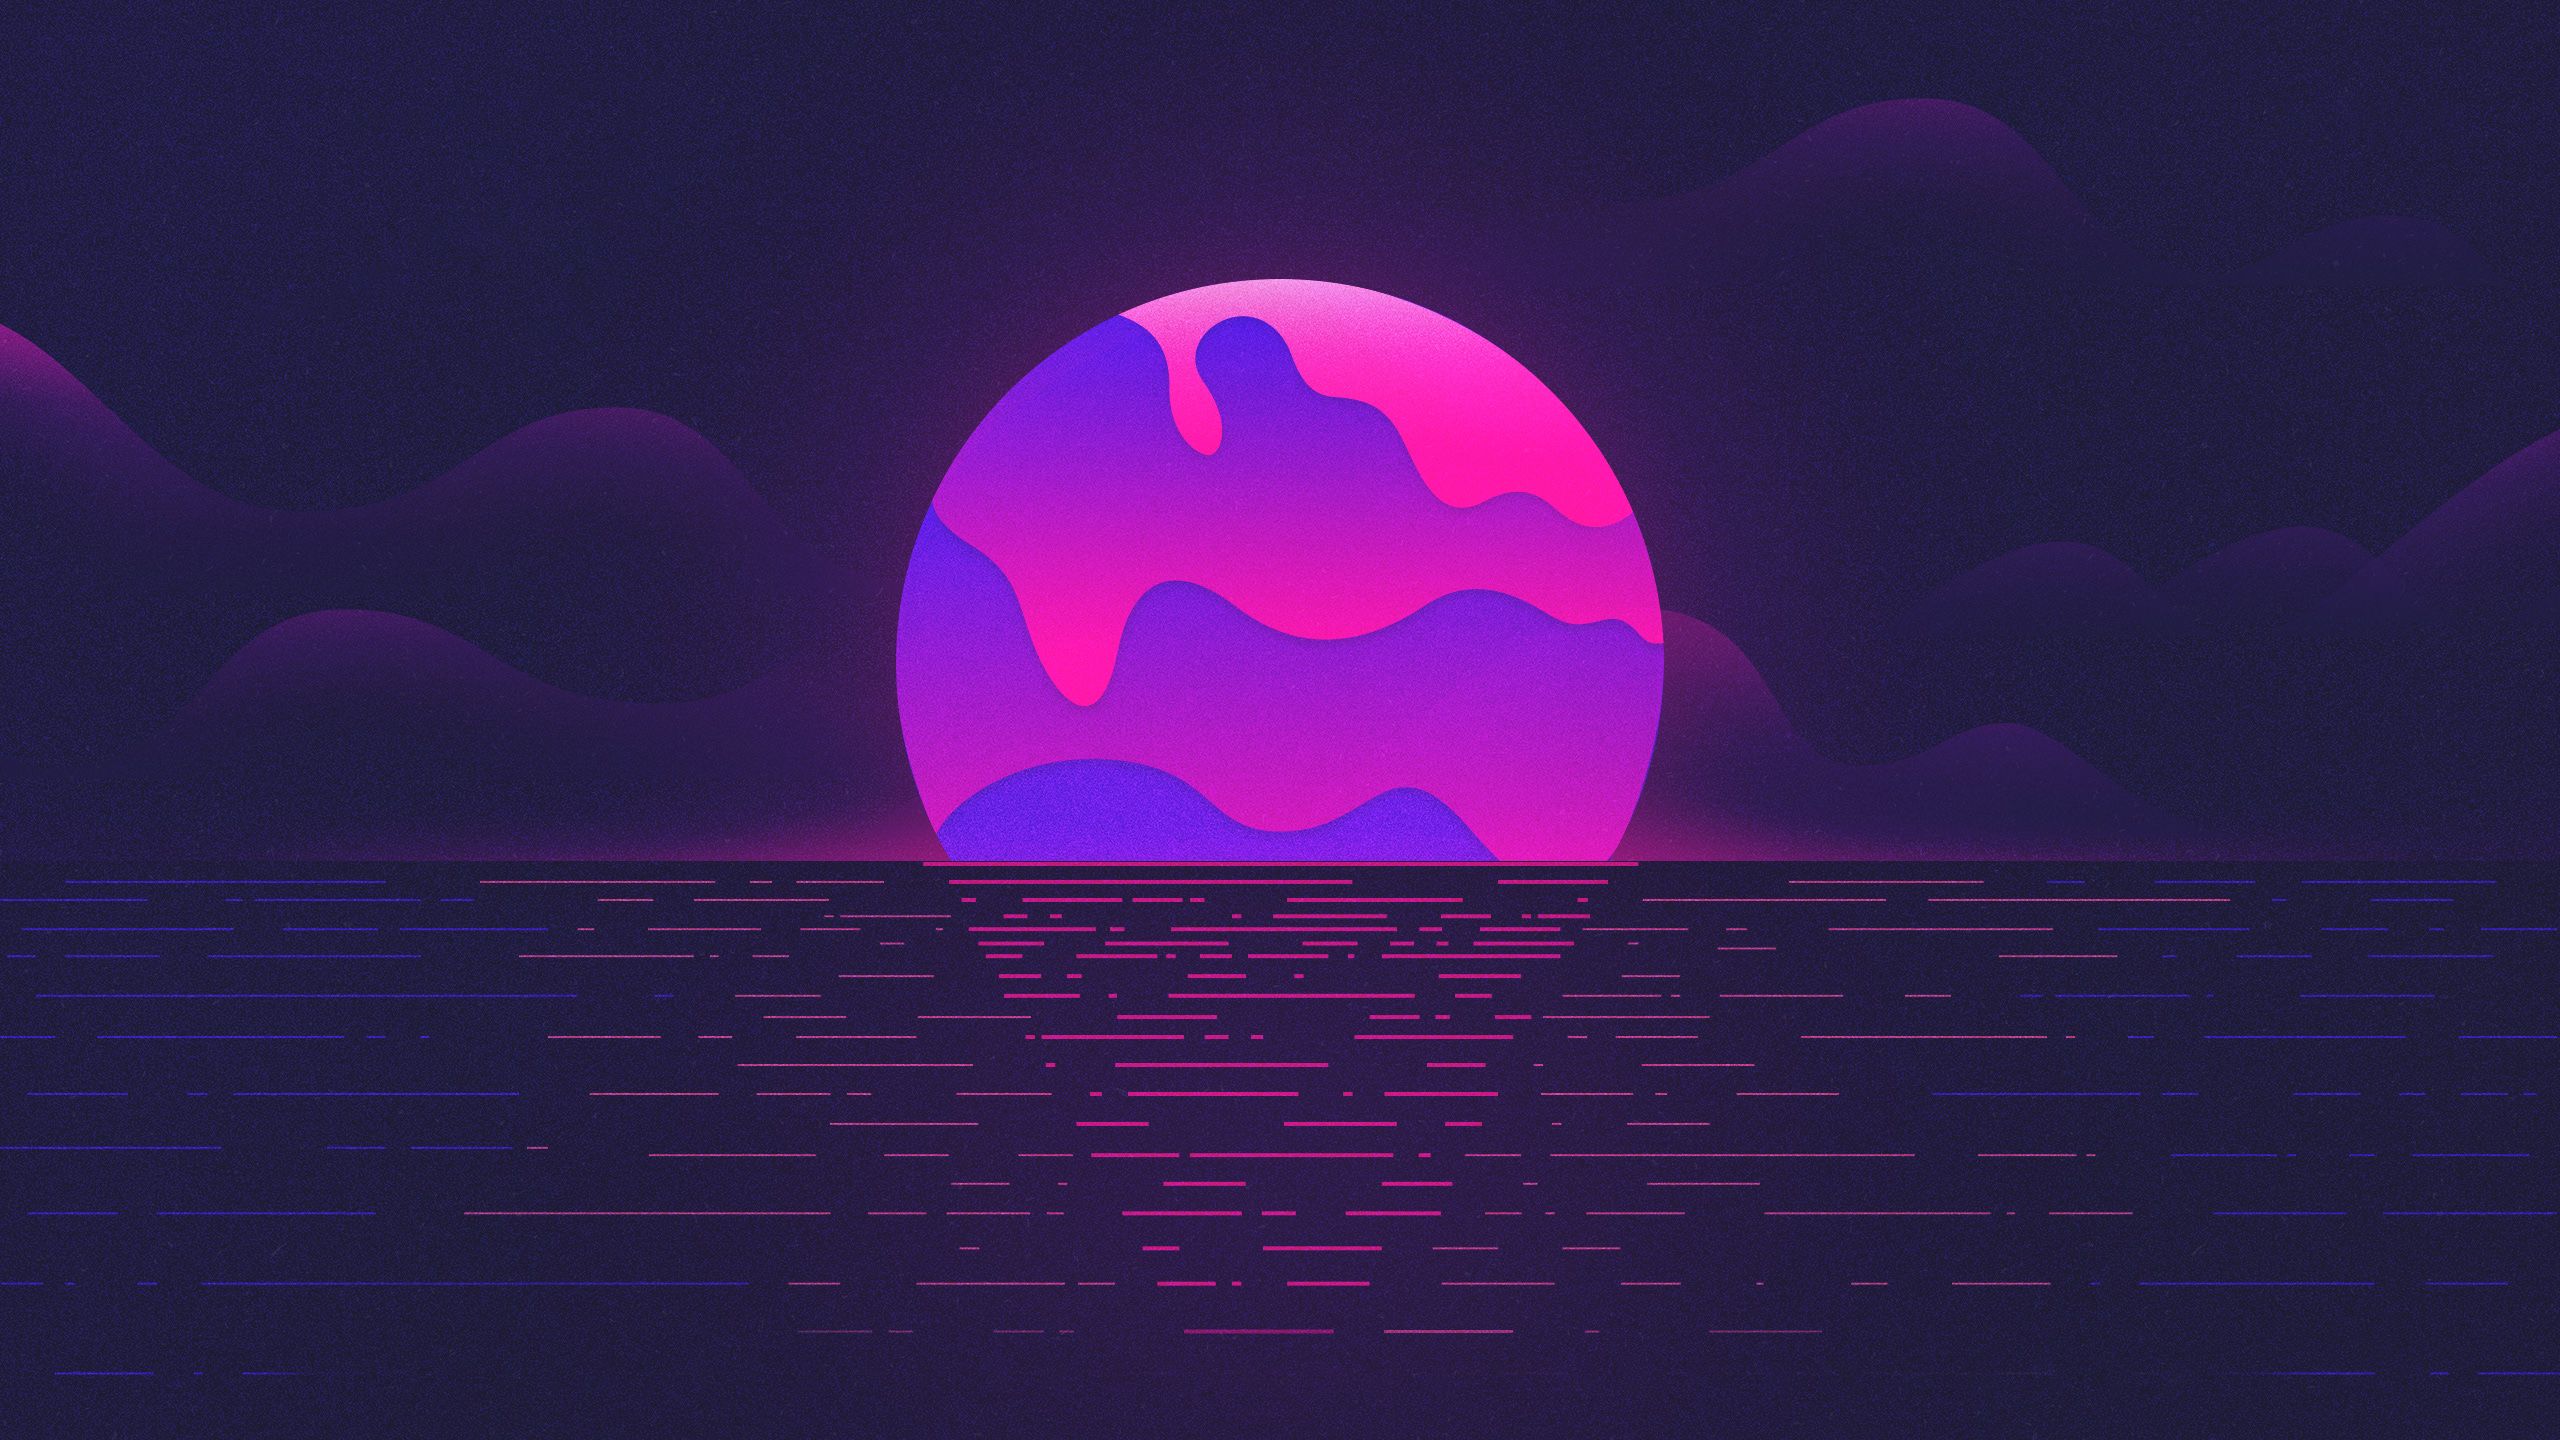 Purple Moon - Tưởng tượng một tia sáng từ mặt trăng, tôn lên bầu trời màu tím tuyệt đẹp. Đó là những gì bạn sẽ cảm nhận khi xem hình ảnh liên quan đến từ khóa \